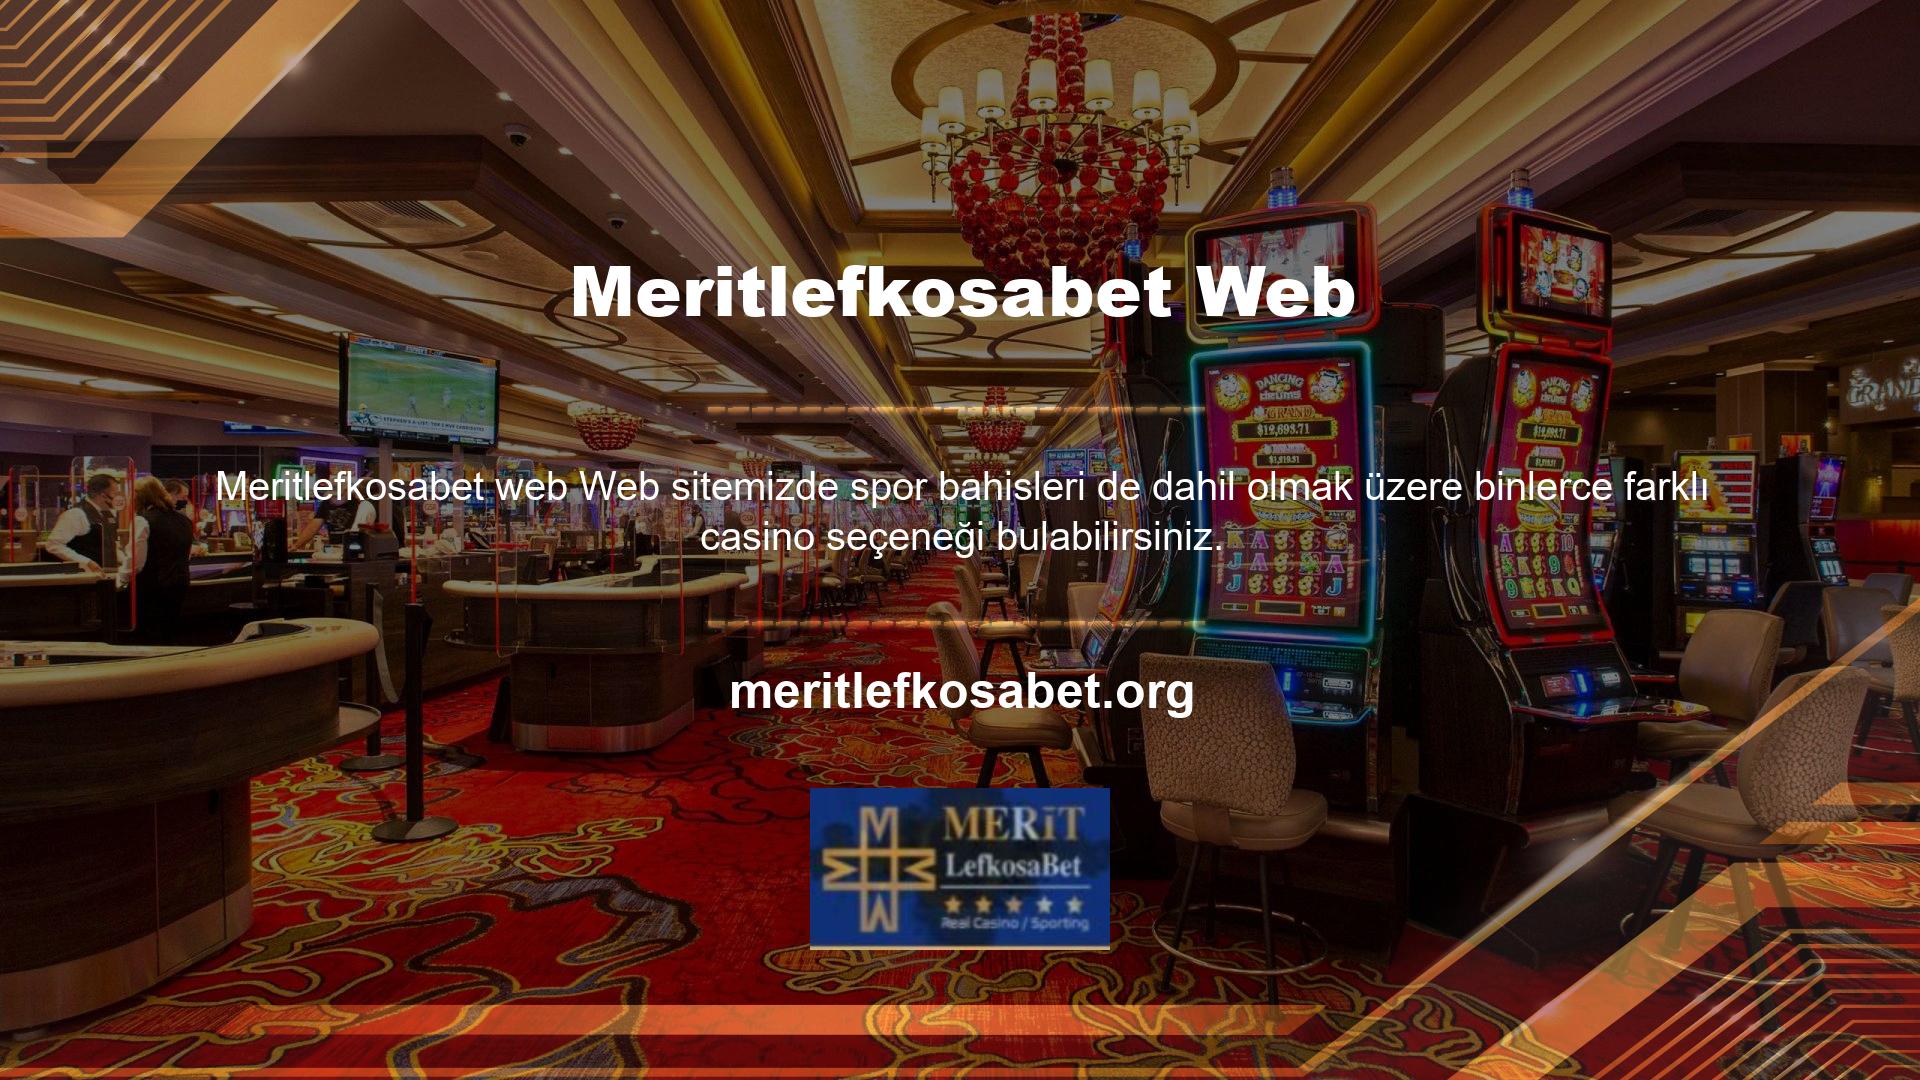 Ancak Meritlefkosabet slot sistemi sayesinde en yeni ve en kazançlı slot oyunlarını oynayabilirsiniz